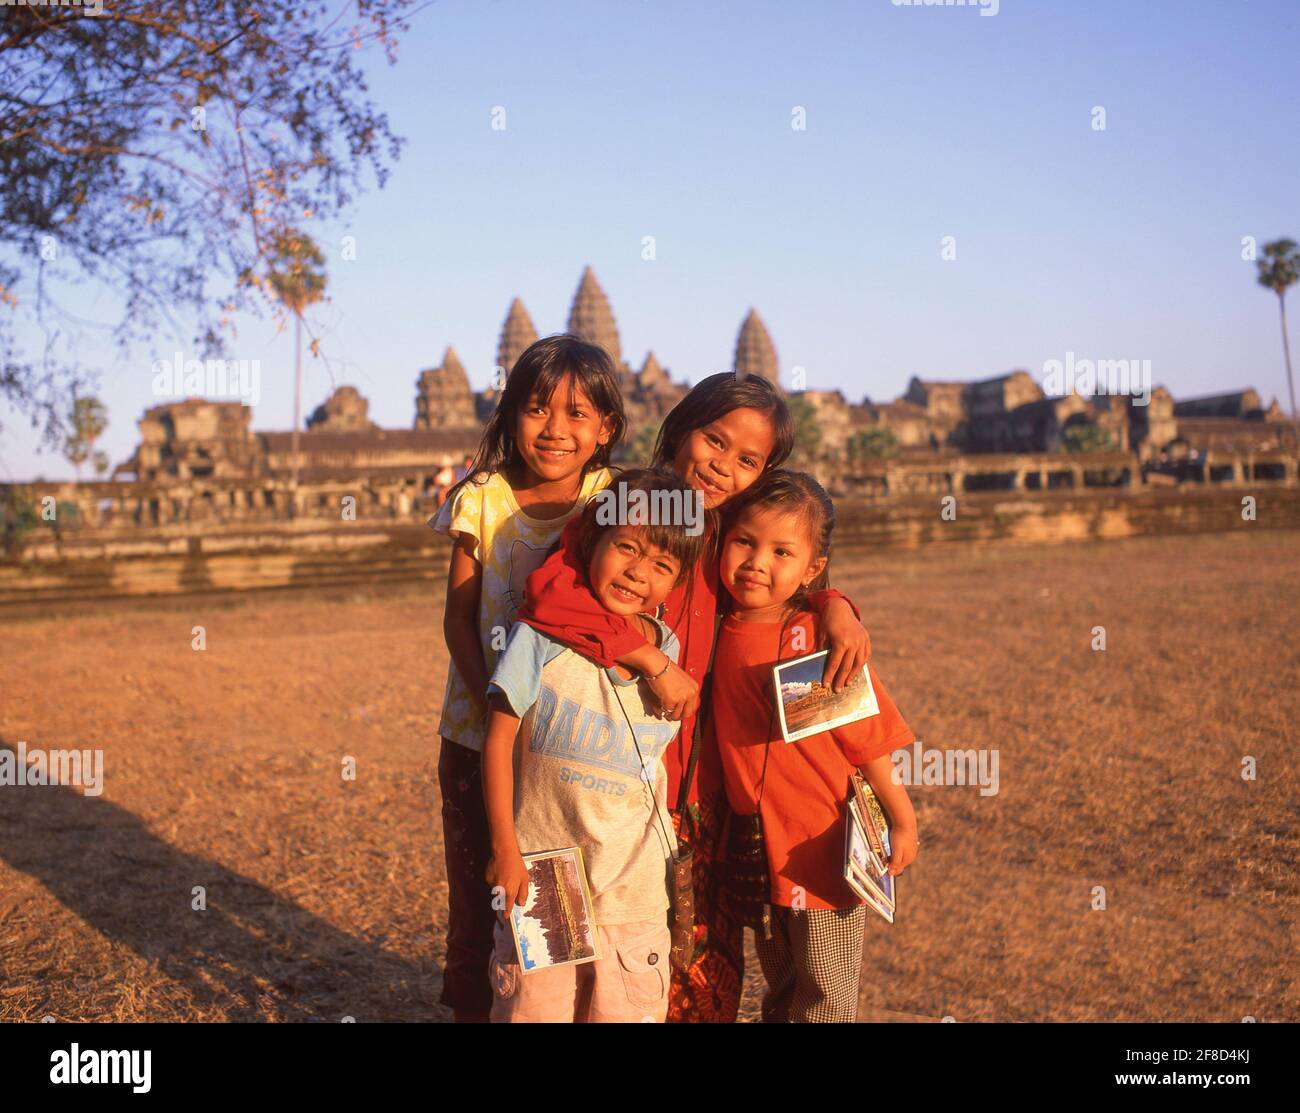 Jeunes filles vendant des cartes postales au temple d'Angkor Wat, Angkor, Siem Reap, Royaume du Cambodge Banque D'Images